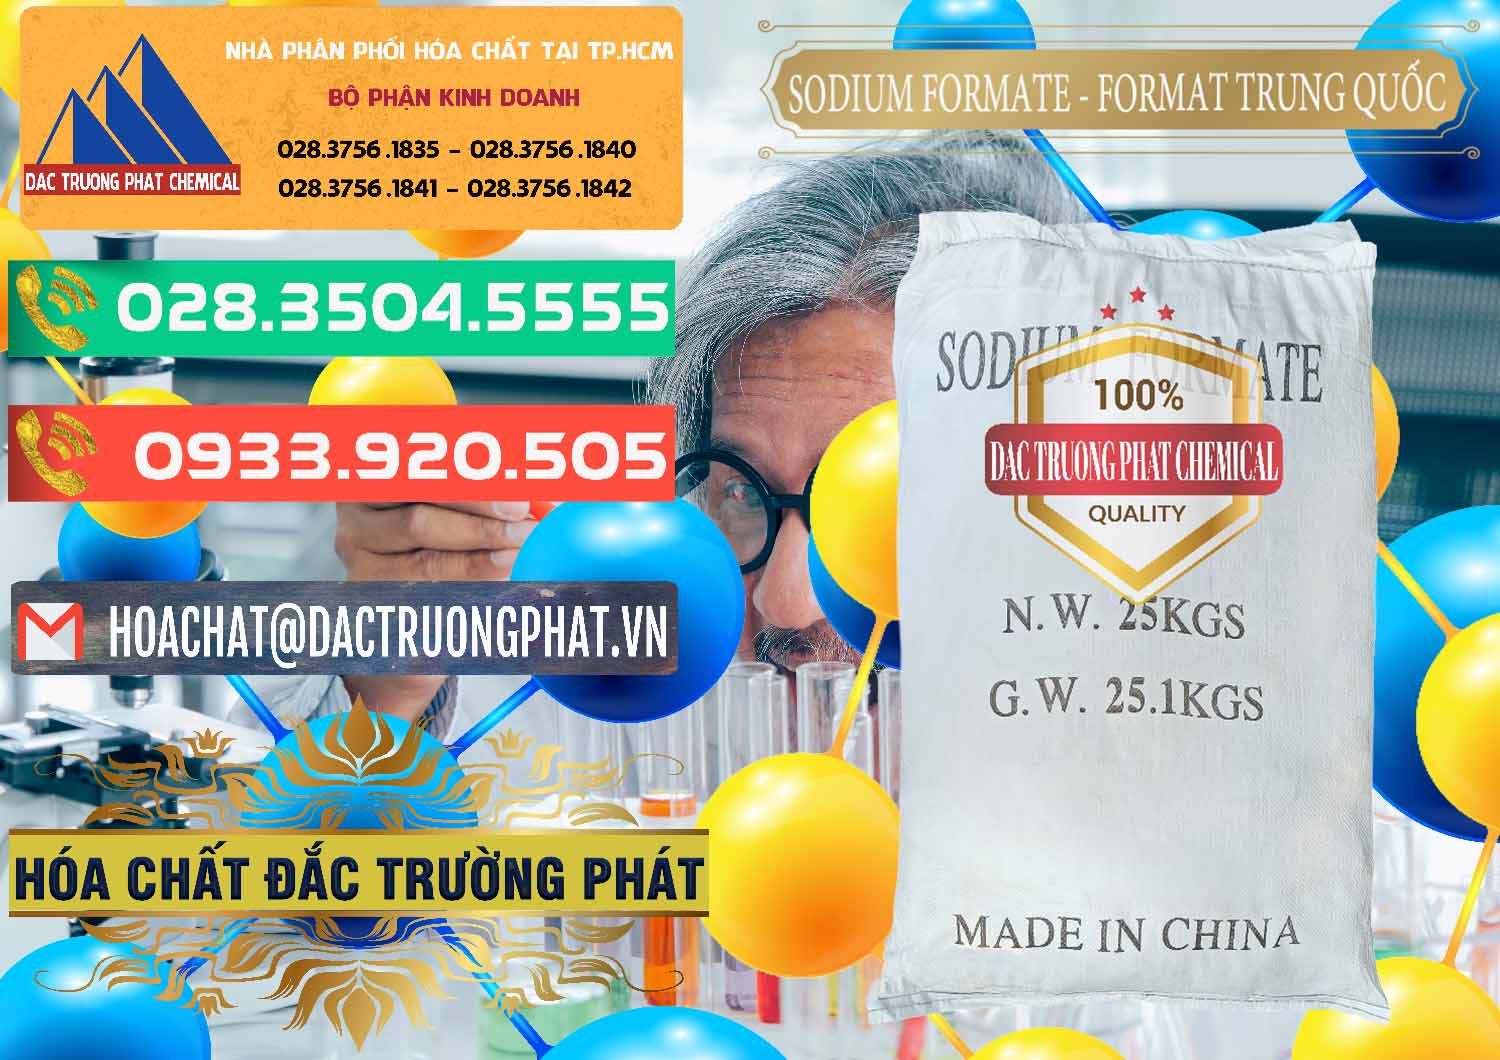 Cty chuyên bán _ cung ứng Sodium Formate - Natri Format Trung Quốc China - 0142 - Nơi phân phối _ kinh doanh hóa chất tại TP.HCM - congtyhoachat.com.vn